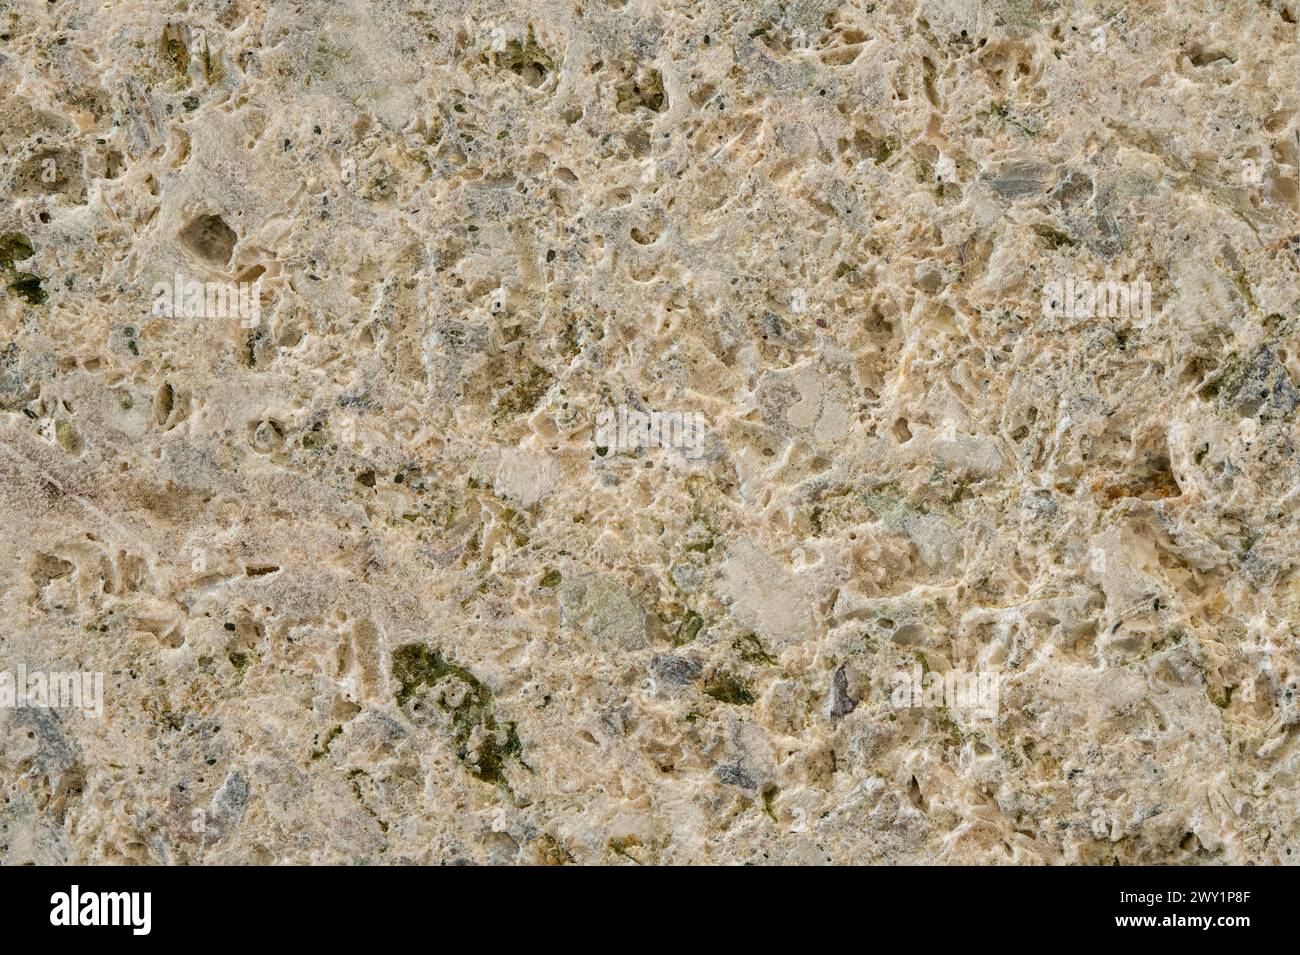 Gros plan de la texture et de la structure d'une pierre brute. Banque D'Images